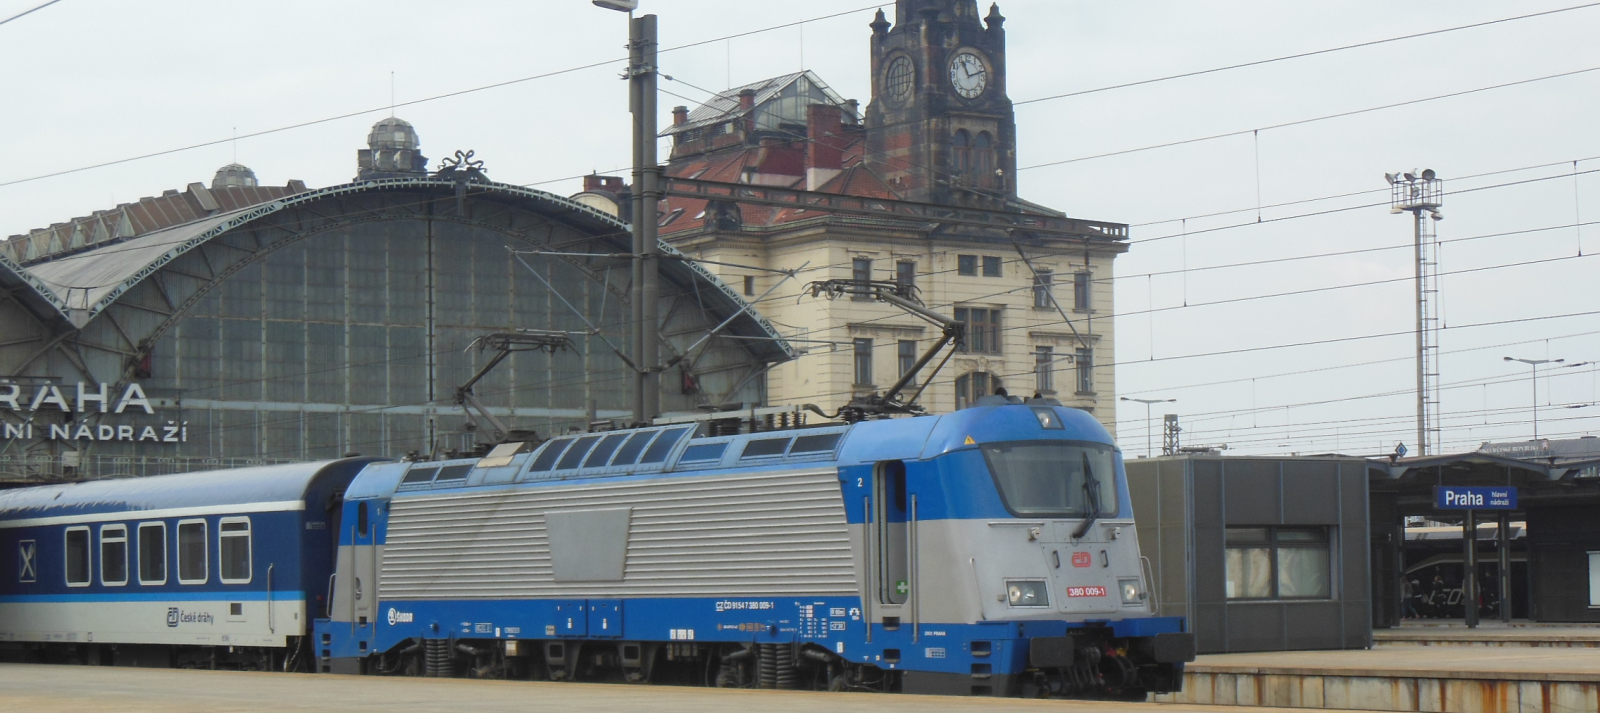 ČD 380 009 in April 2014 in Prague